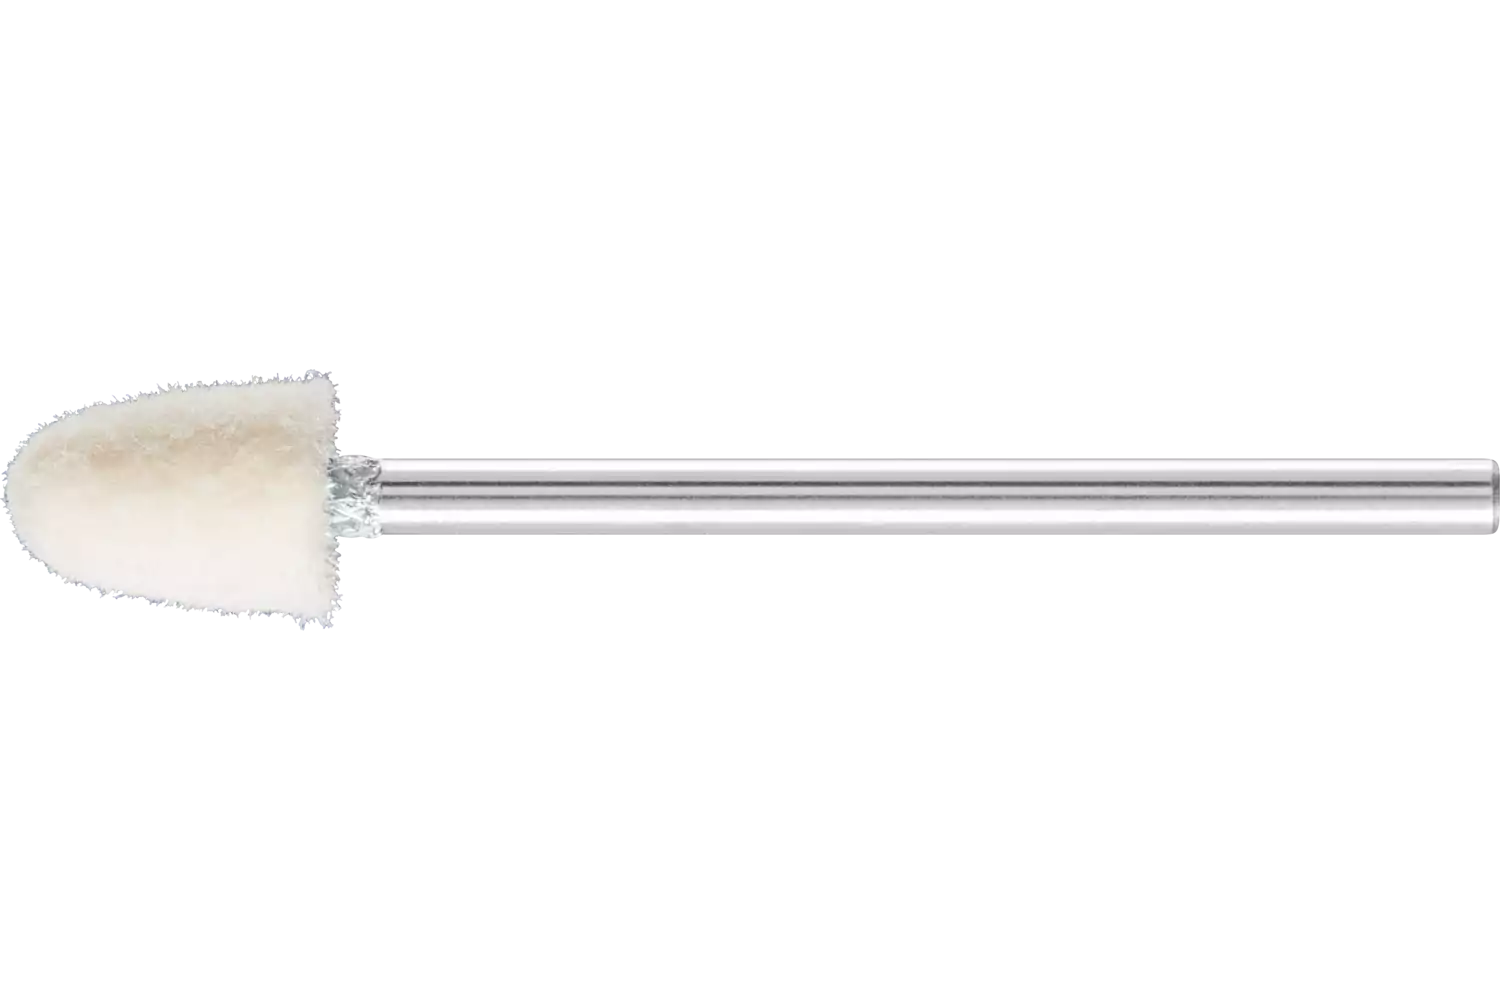 Feltri con gambo per lucidare medio-duri forma a cono Ø 6x10 mm, gambo Ø 2,35 mm 1